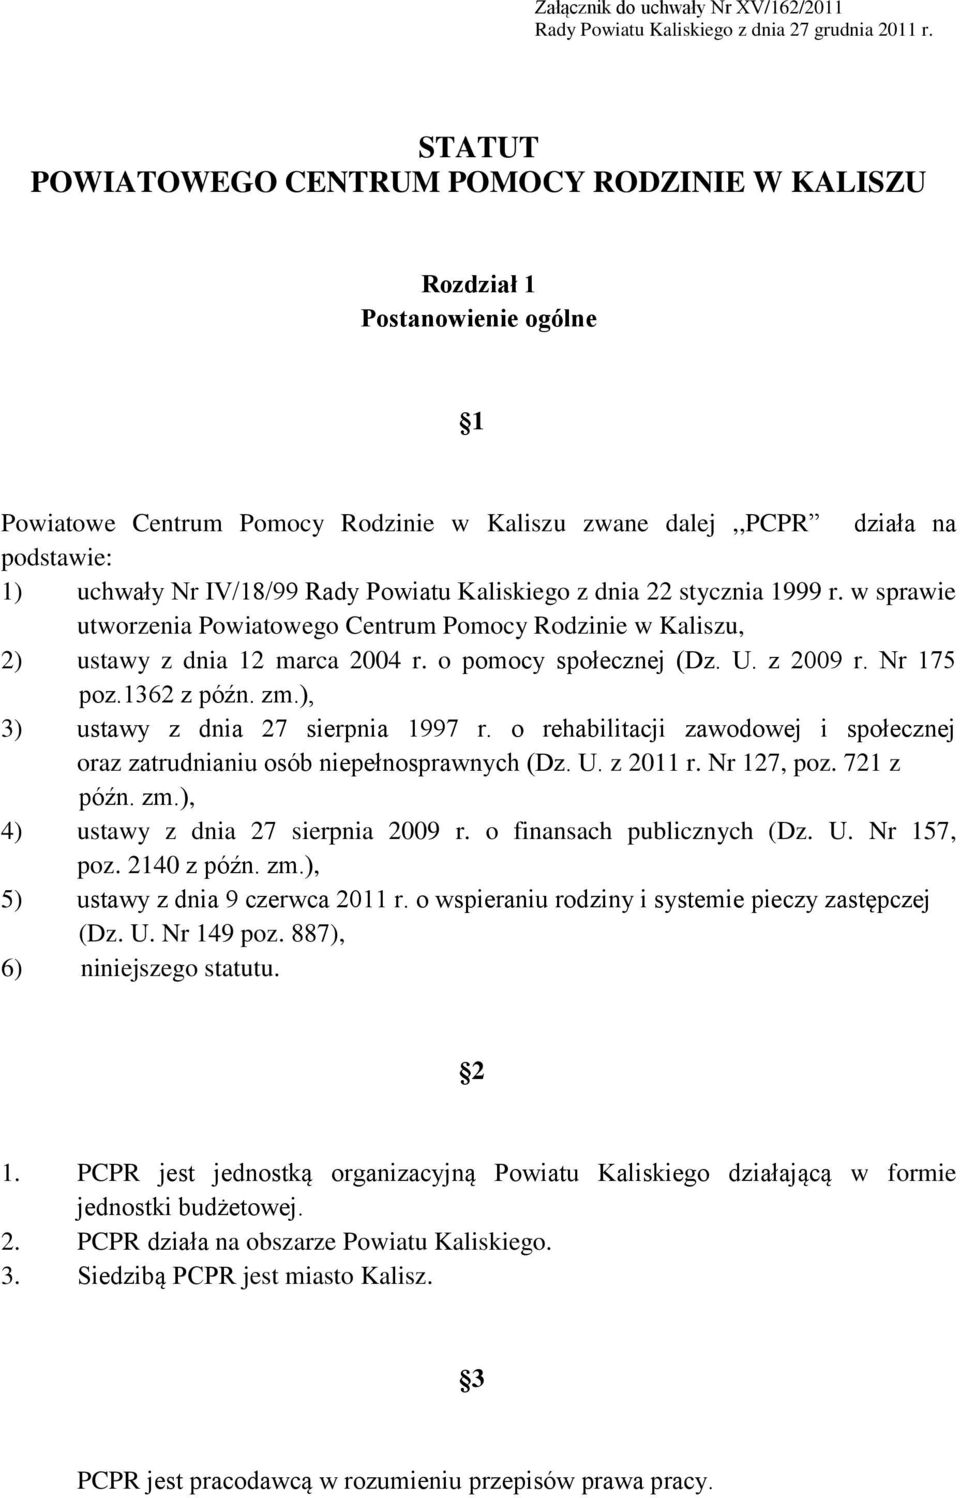 Powiatu Kaliskiego z dnia 22 stycznia 1999 r. w sprawie utworzenia Powiatowego Centrum Pomocy Rodzinie w Kaliszu, 2) ustawy z dnia 12 marca 2004 r. o pomocy społecznej (Dz. U. z 2009 r. Nr 175 poz.